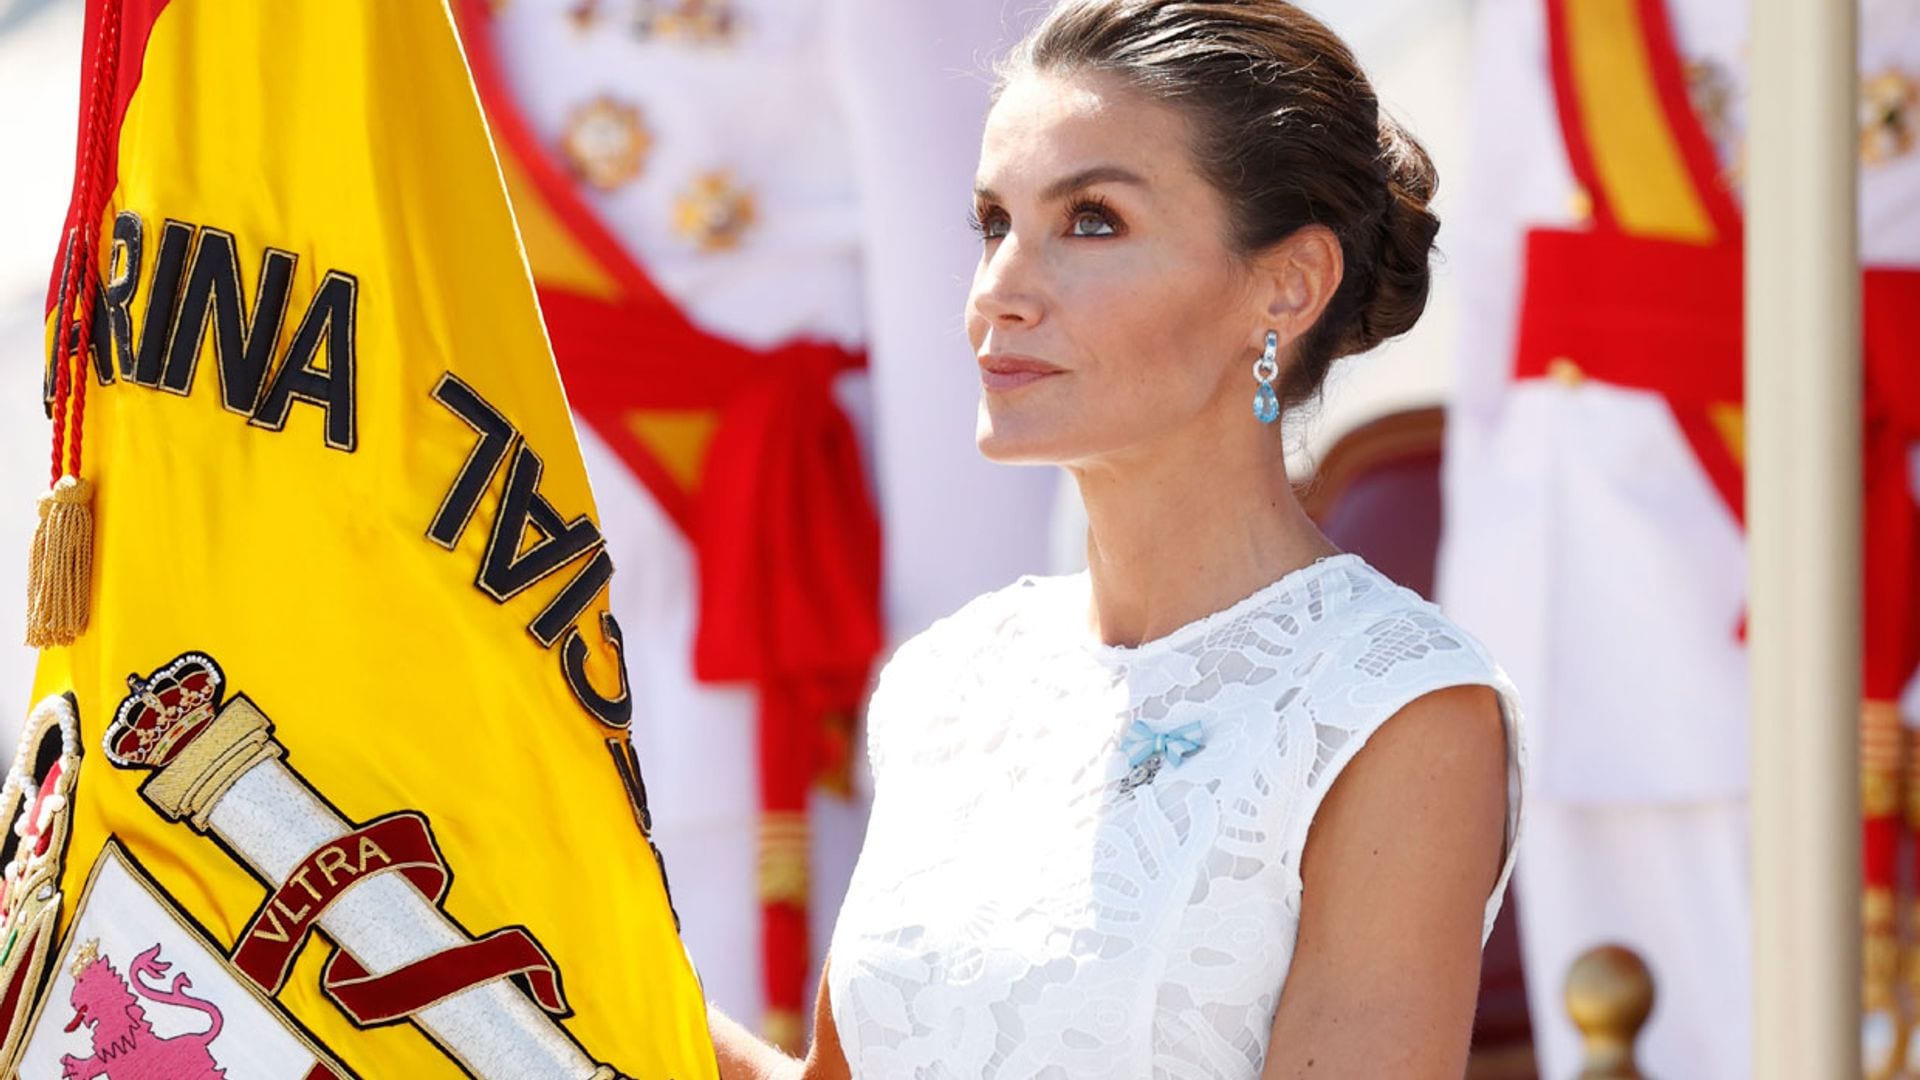 La Reina se adelanta al verano con su vestido semitransparente de encaje blanco